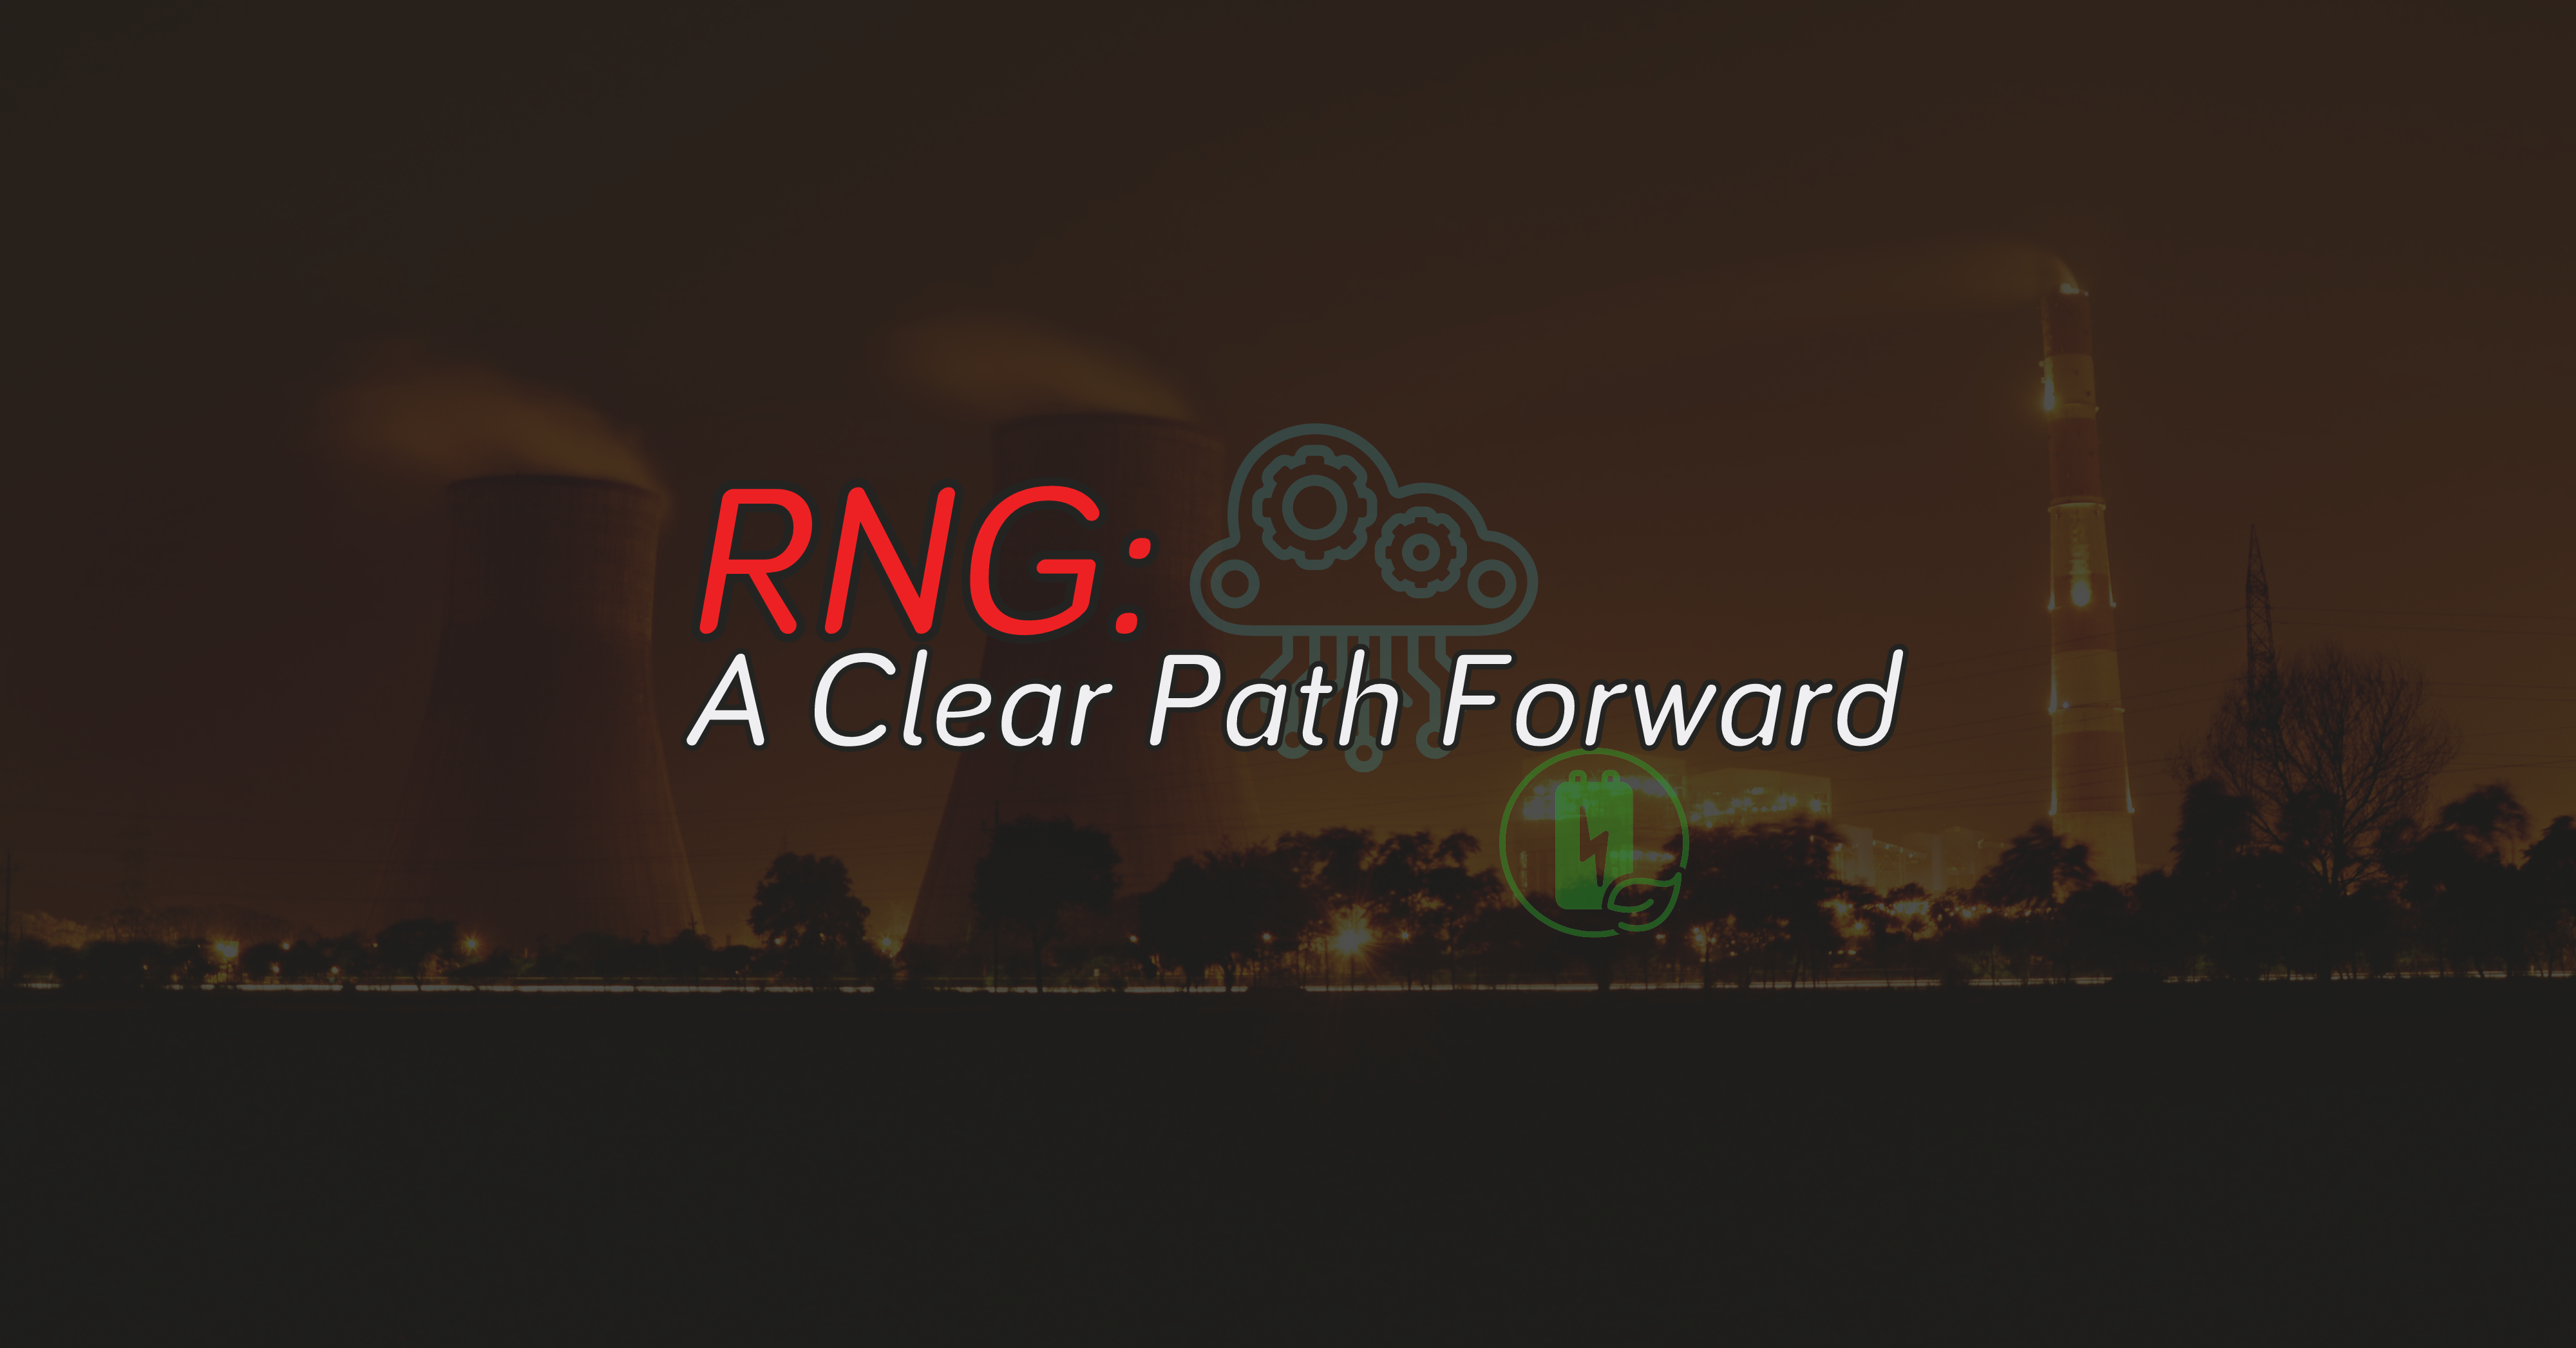 RNG: A Clear Path Forward